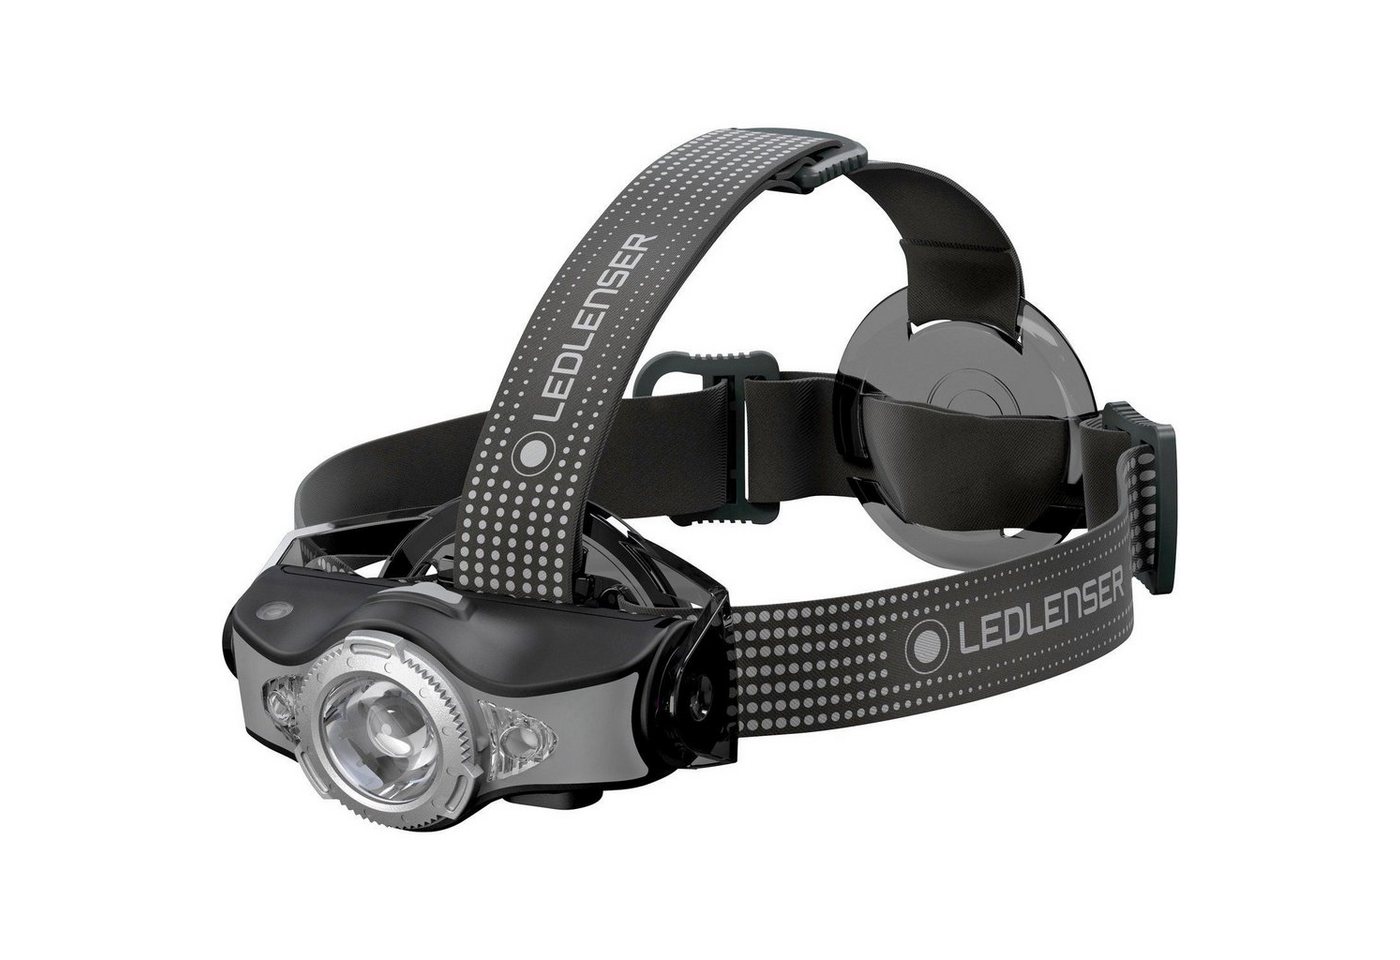 Ledlenser LED Stirnlampe MH11 Outdoor-Stirnlampe, personalisierbar via App, bis zu 1000 Lumen von Ledlenser